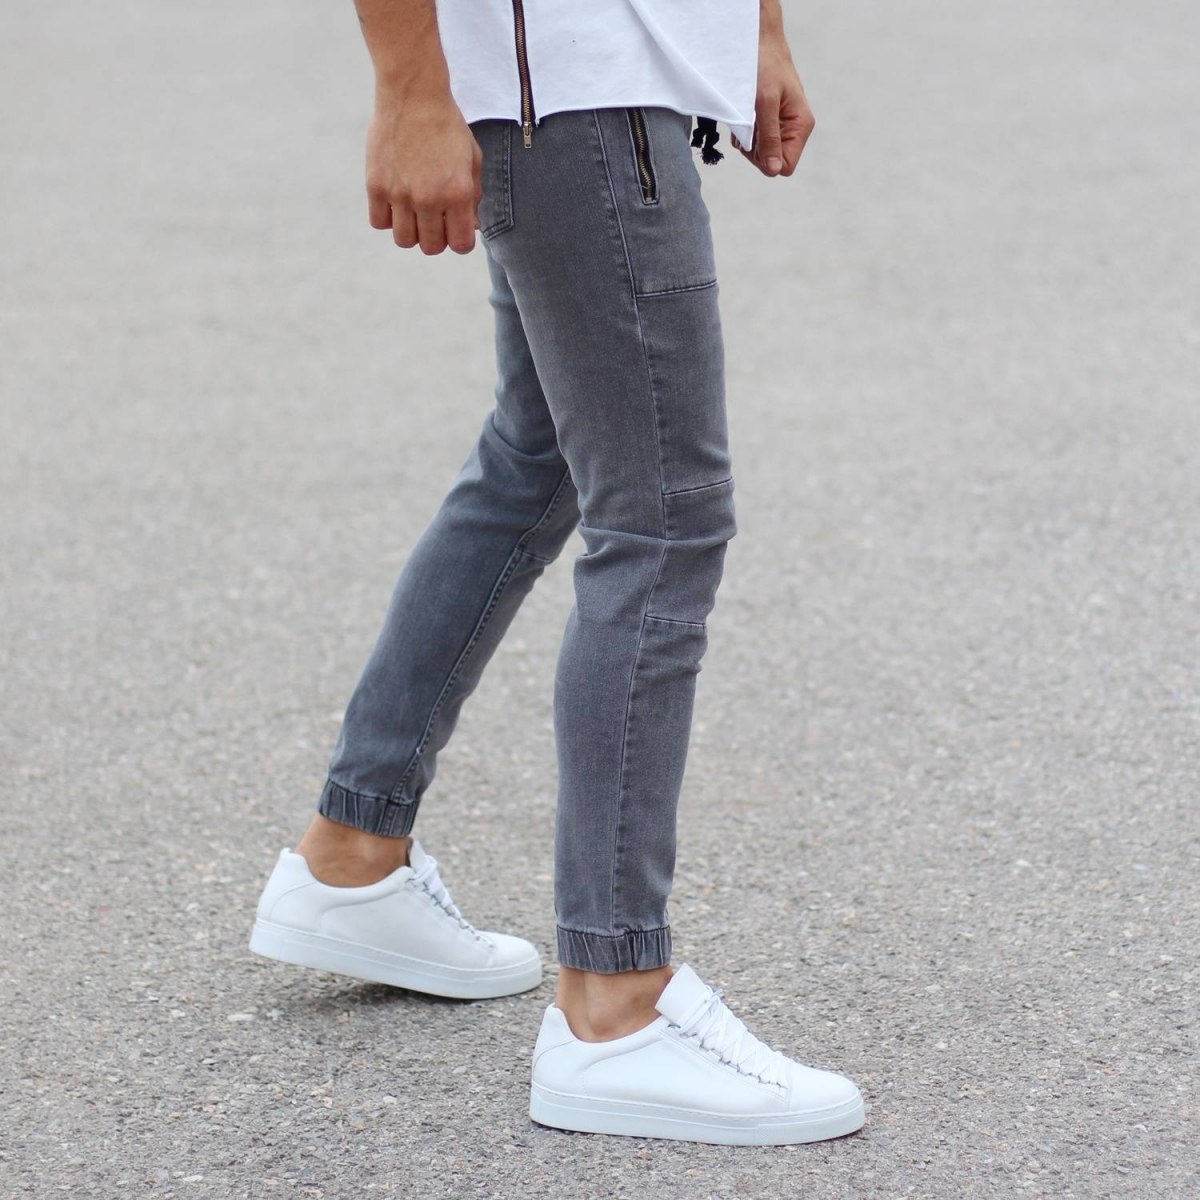 Herren Jeans mit Reißverschluss Taschen und elastischen Knöcheln in grau - 2